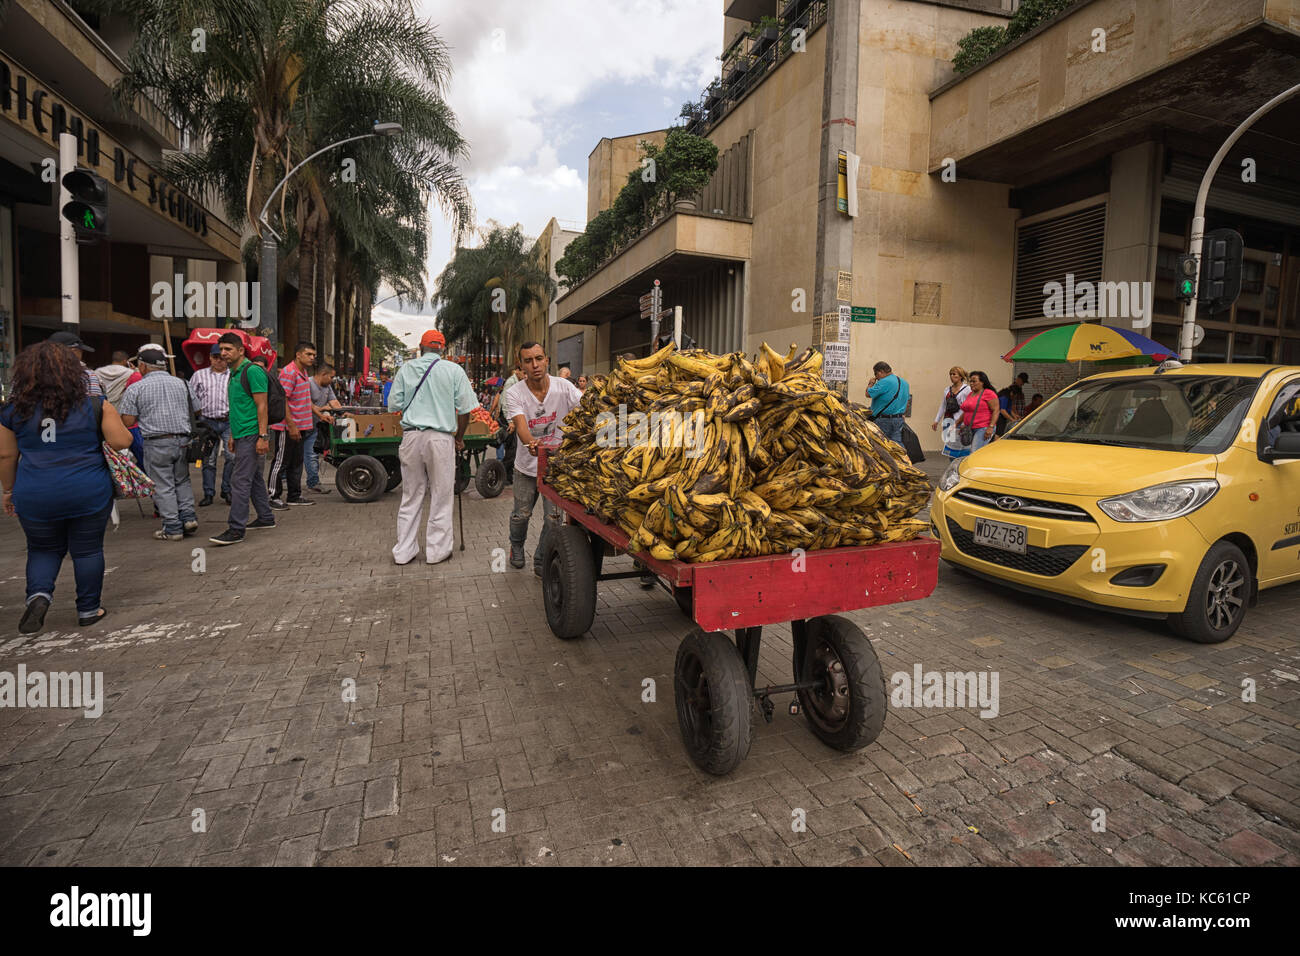 26 septembre 2017 Medellin, Colombie : un vendeur de mobiles en poussant un chariot plein de bananes dans le centre de la ville Banque D'Images